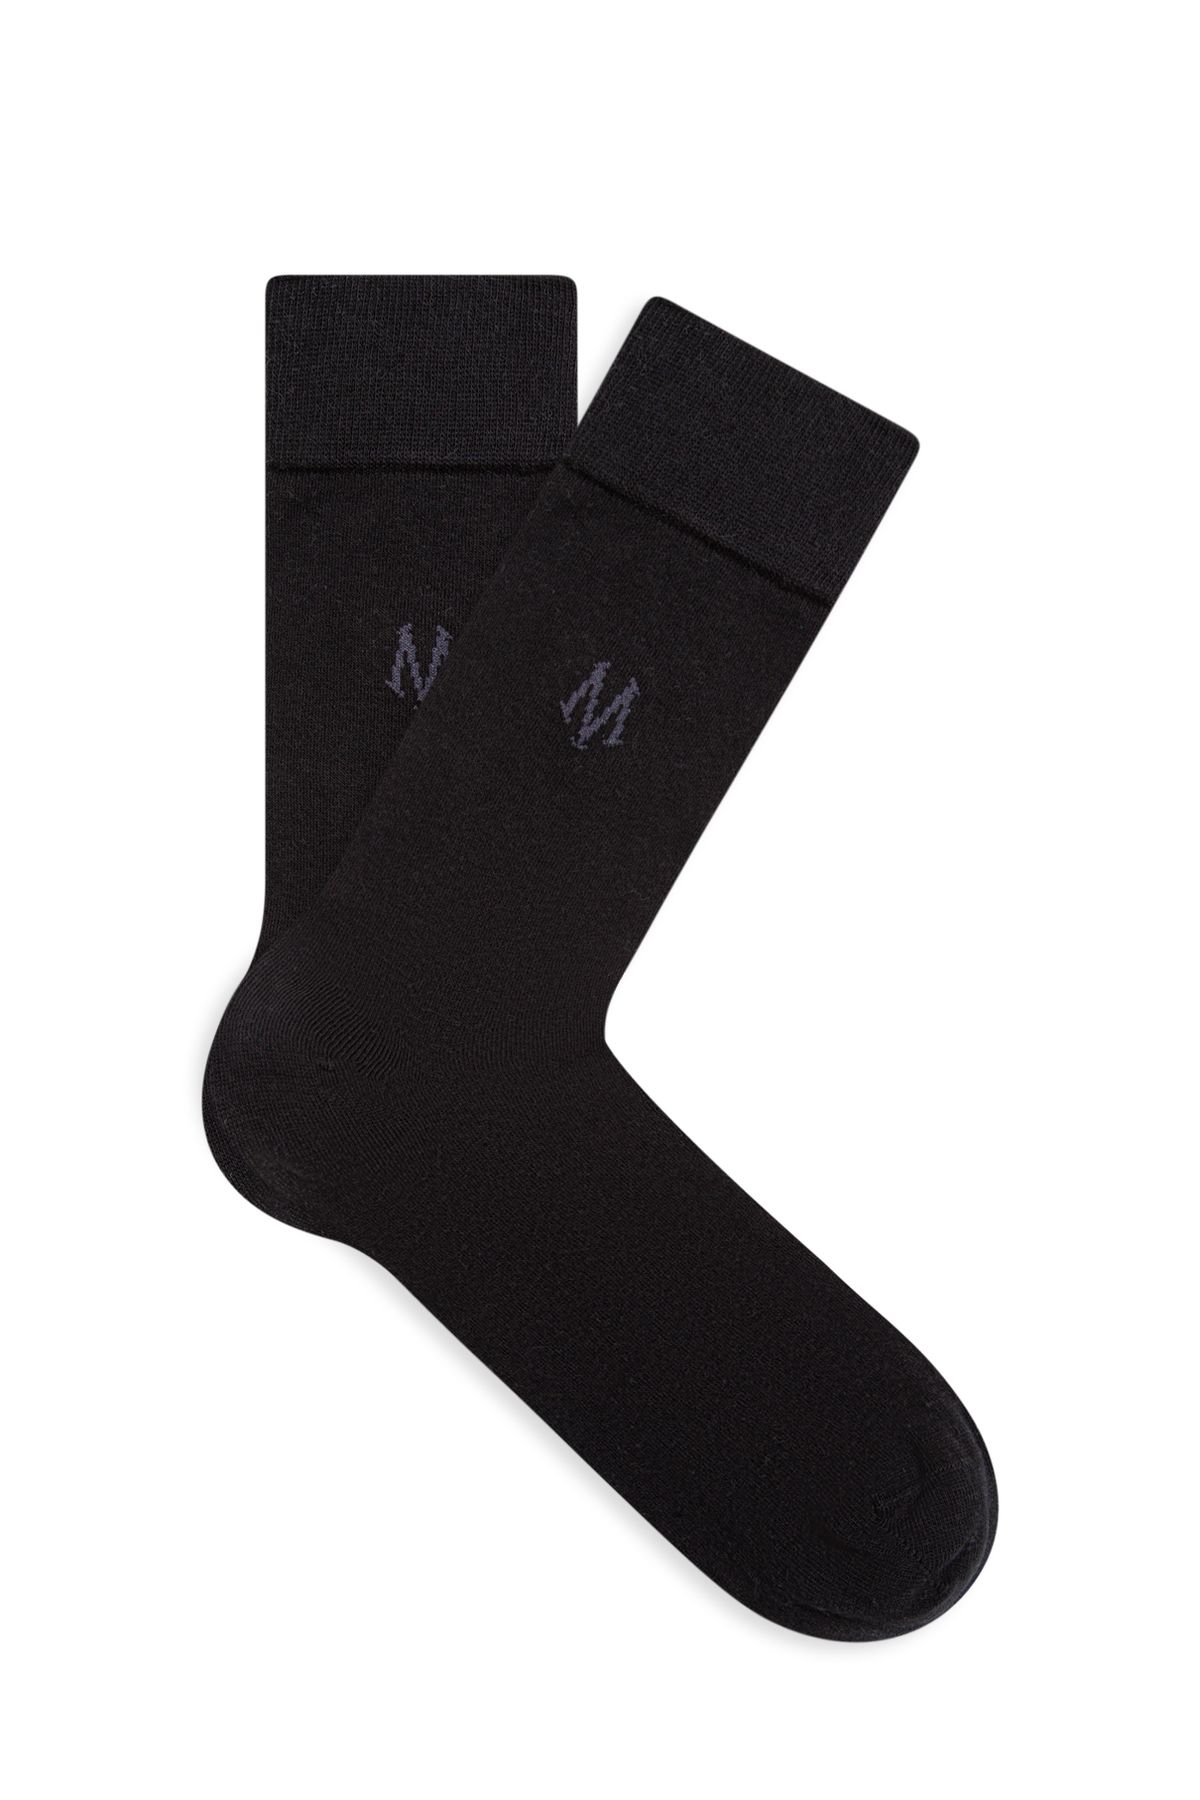 Mavi Logo Baskılı Siyah Soket Çorap 090250-26341